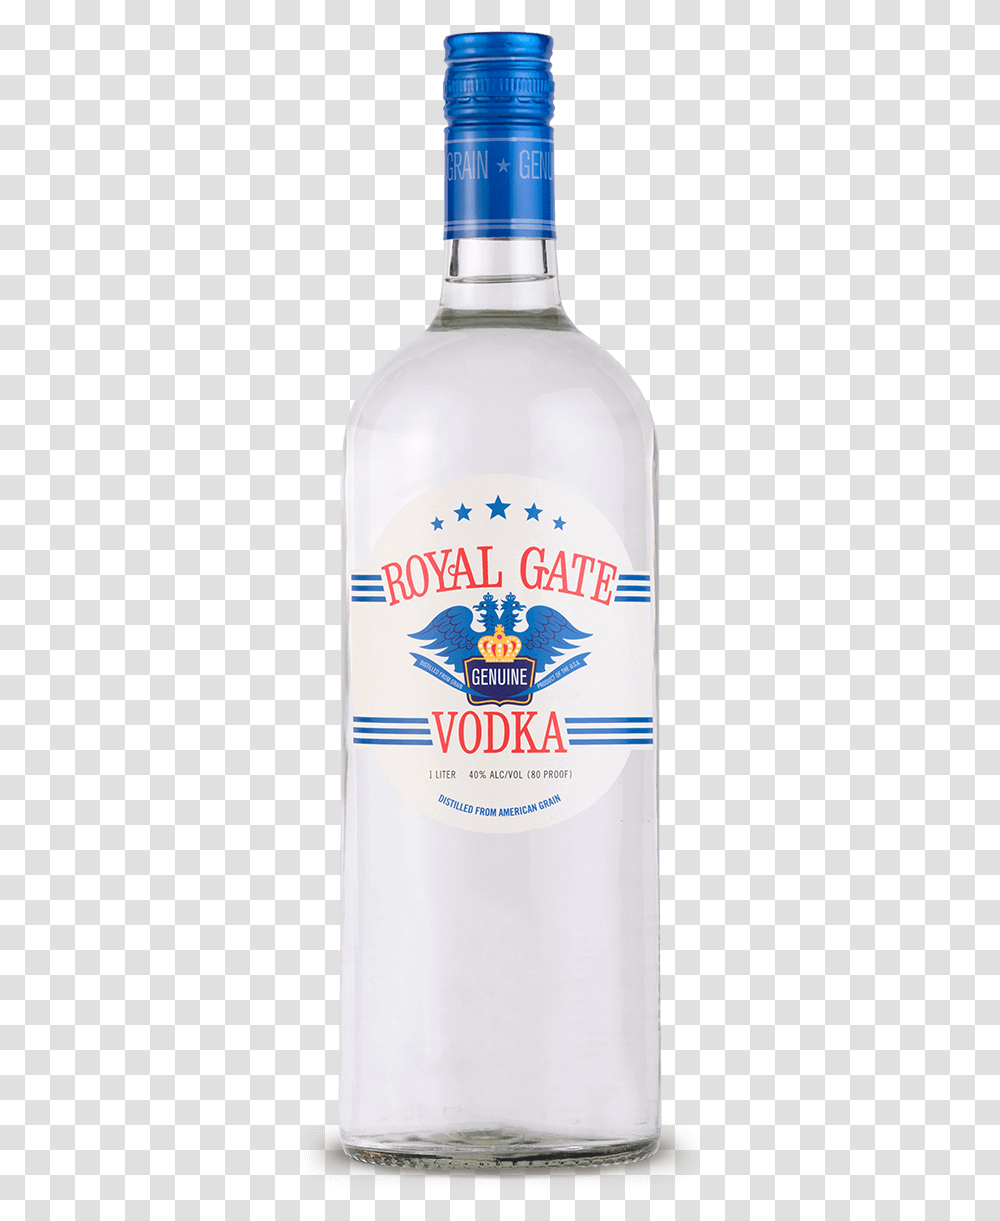 Royal Gate Vodka, Liquor, Alcohol, Beverage, Drink Transparent Png